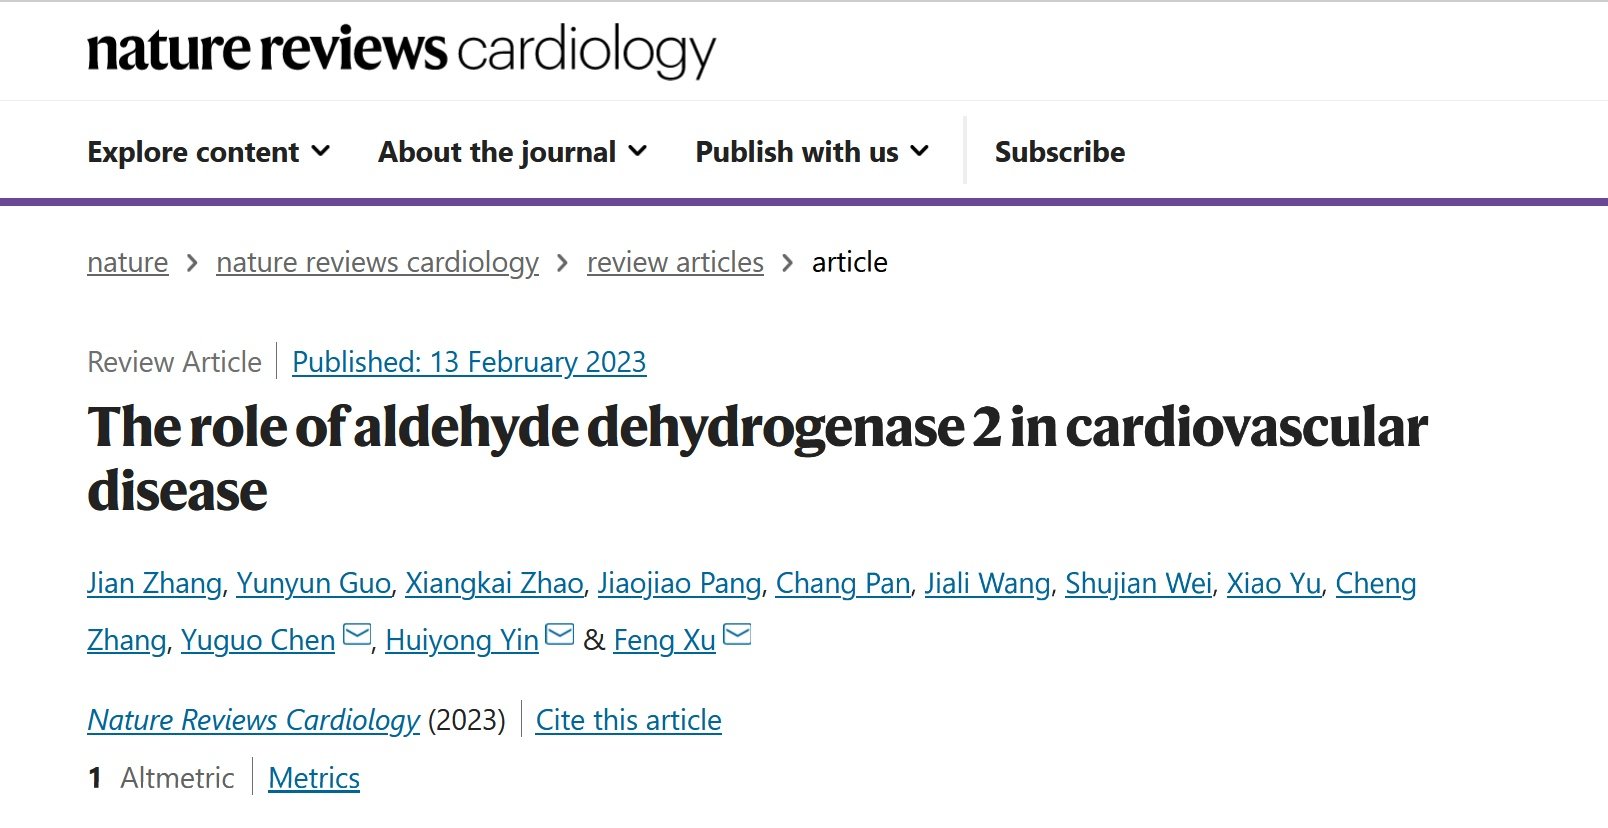 陈玉国/徐峰团队在Nature子刊发表重磅综述：乙醛脱氢酶2与心血管疾病